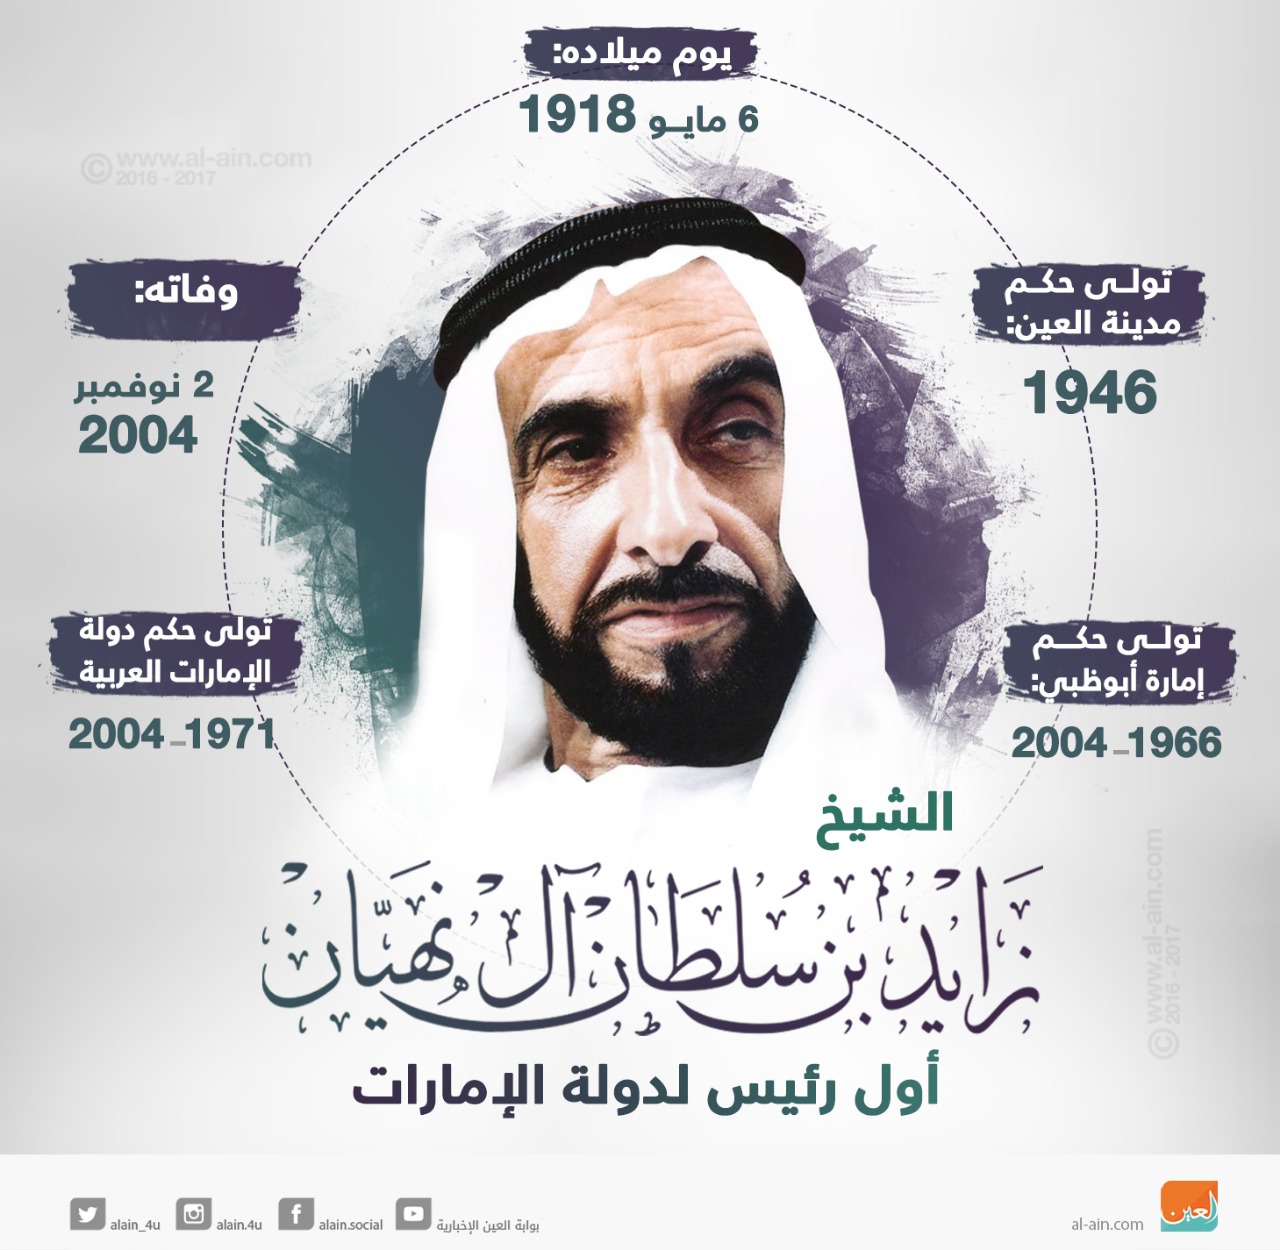 الإمارات تحيي الذكرى الـ14 لوفاة الشيخ زايد ملف خاص